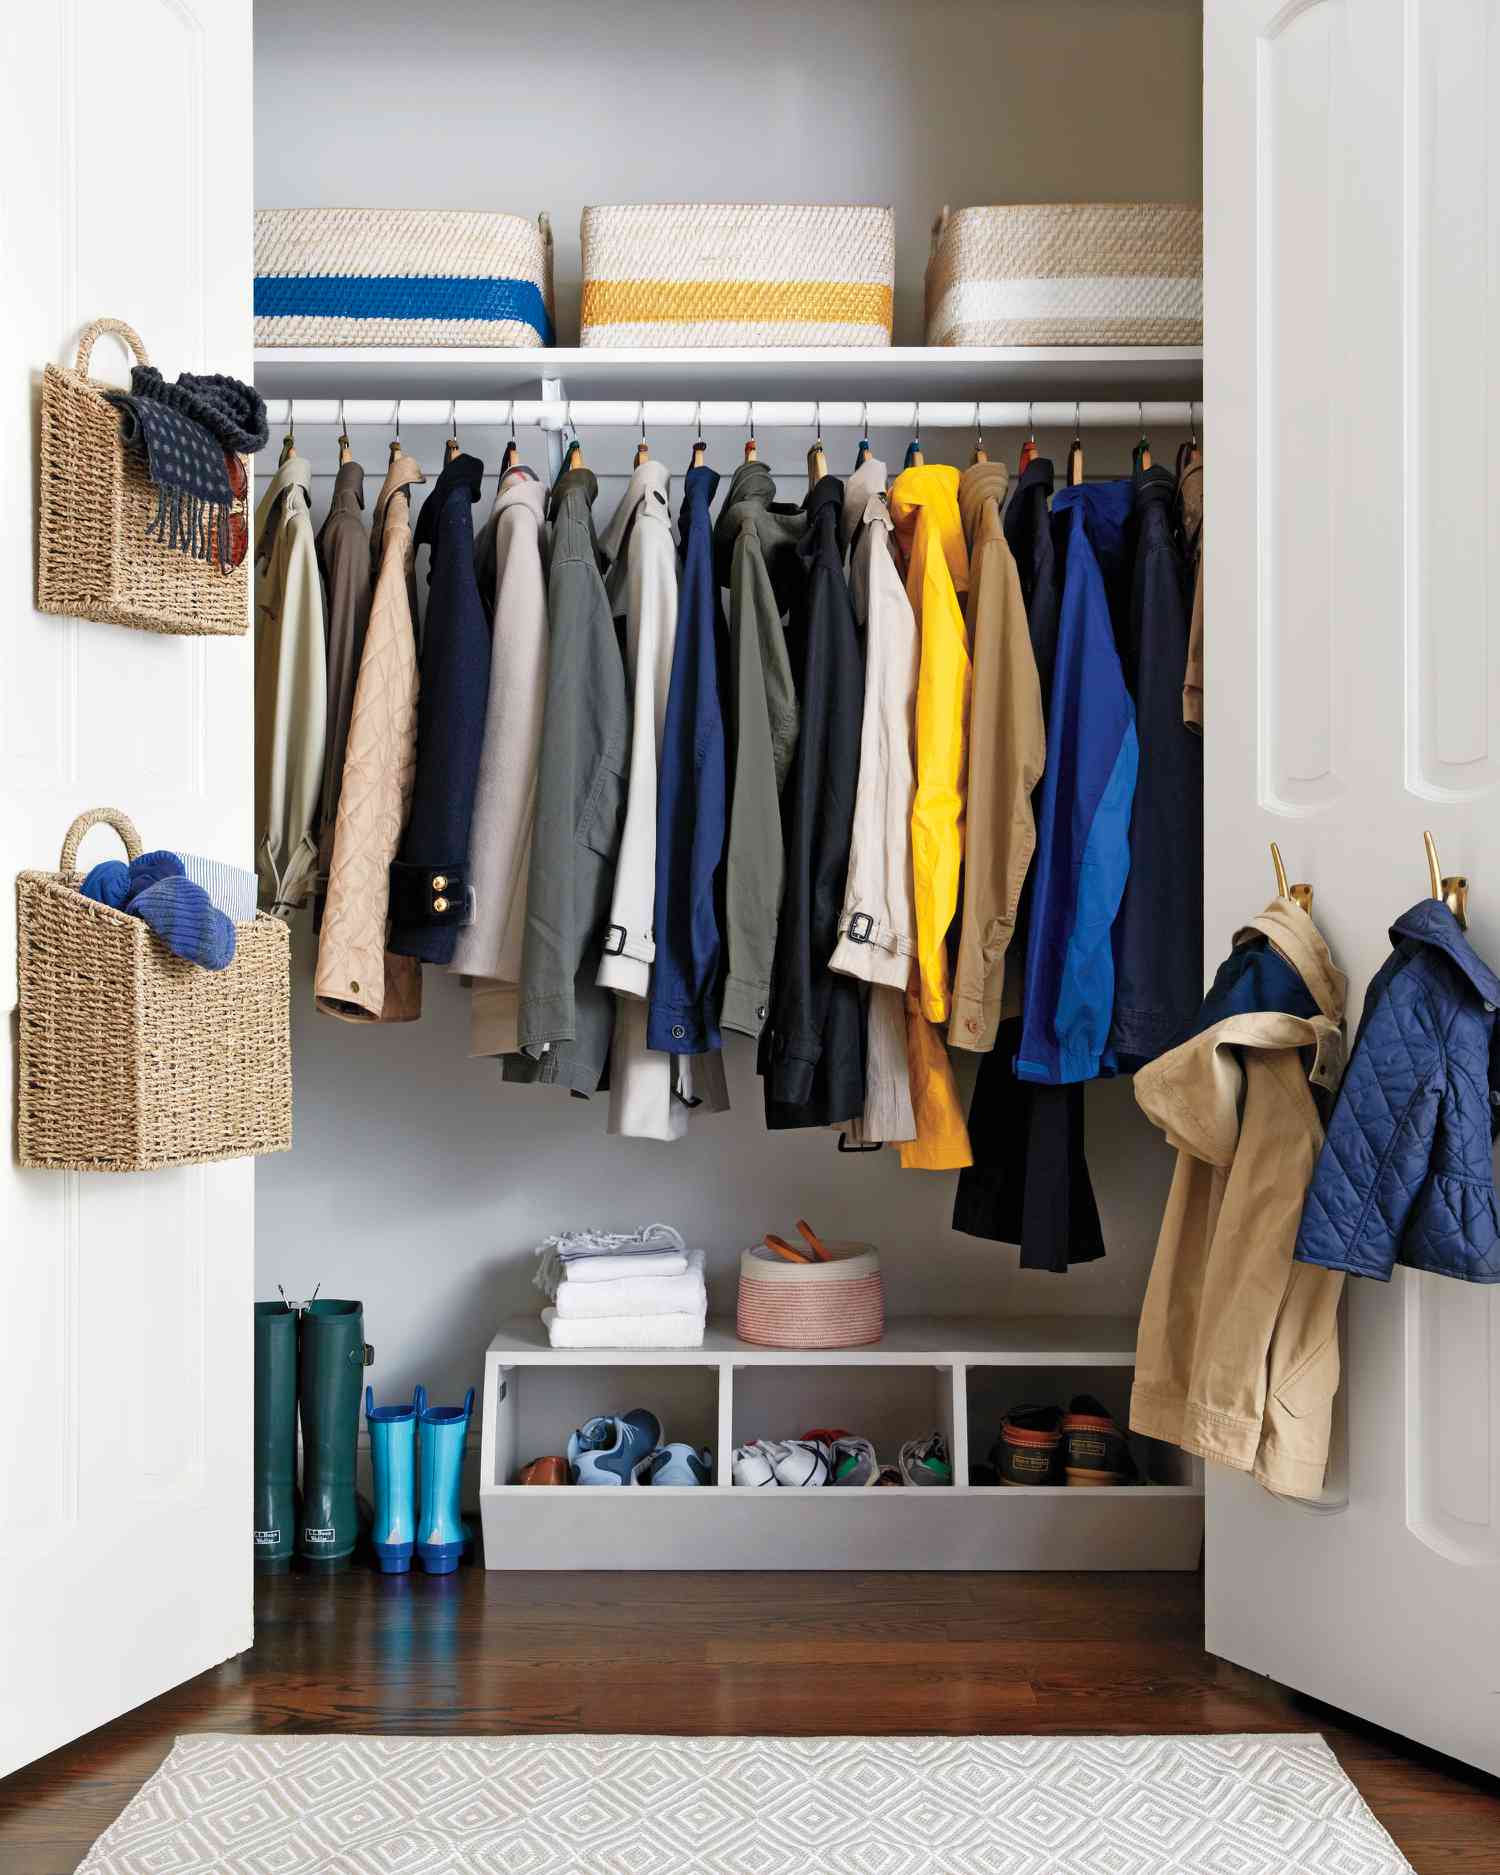 How To Organize A Deep Closet Martha, How To Organize Clothing Shelves